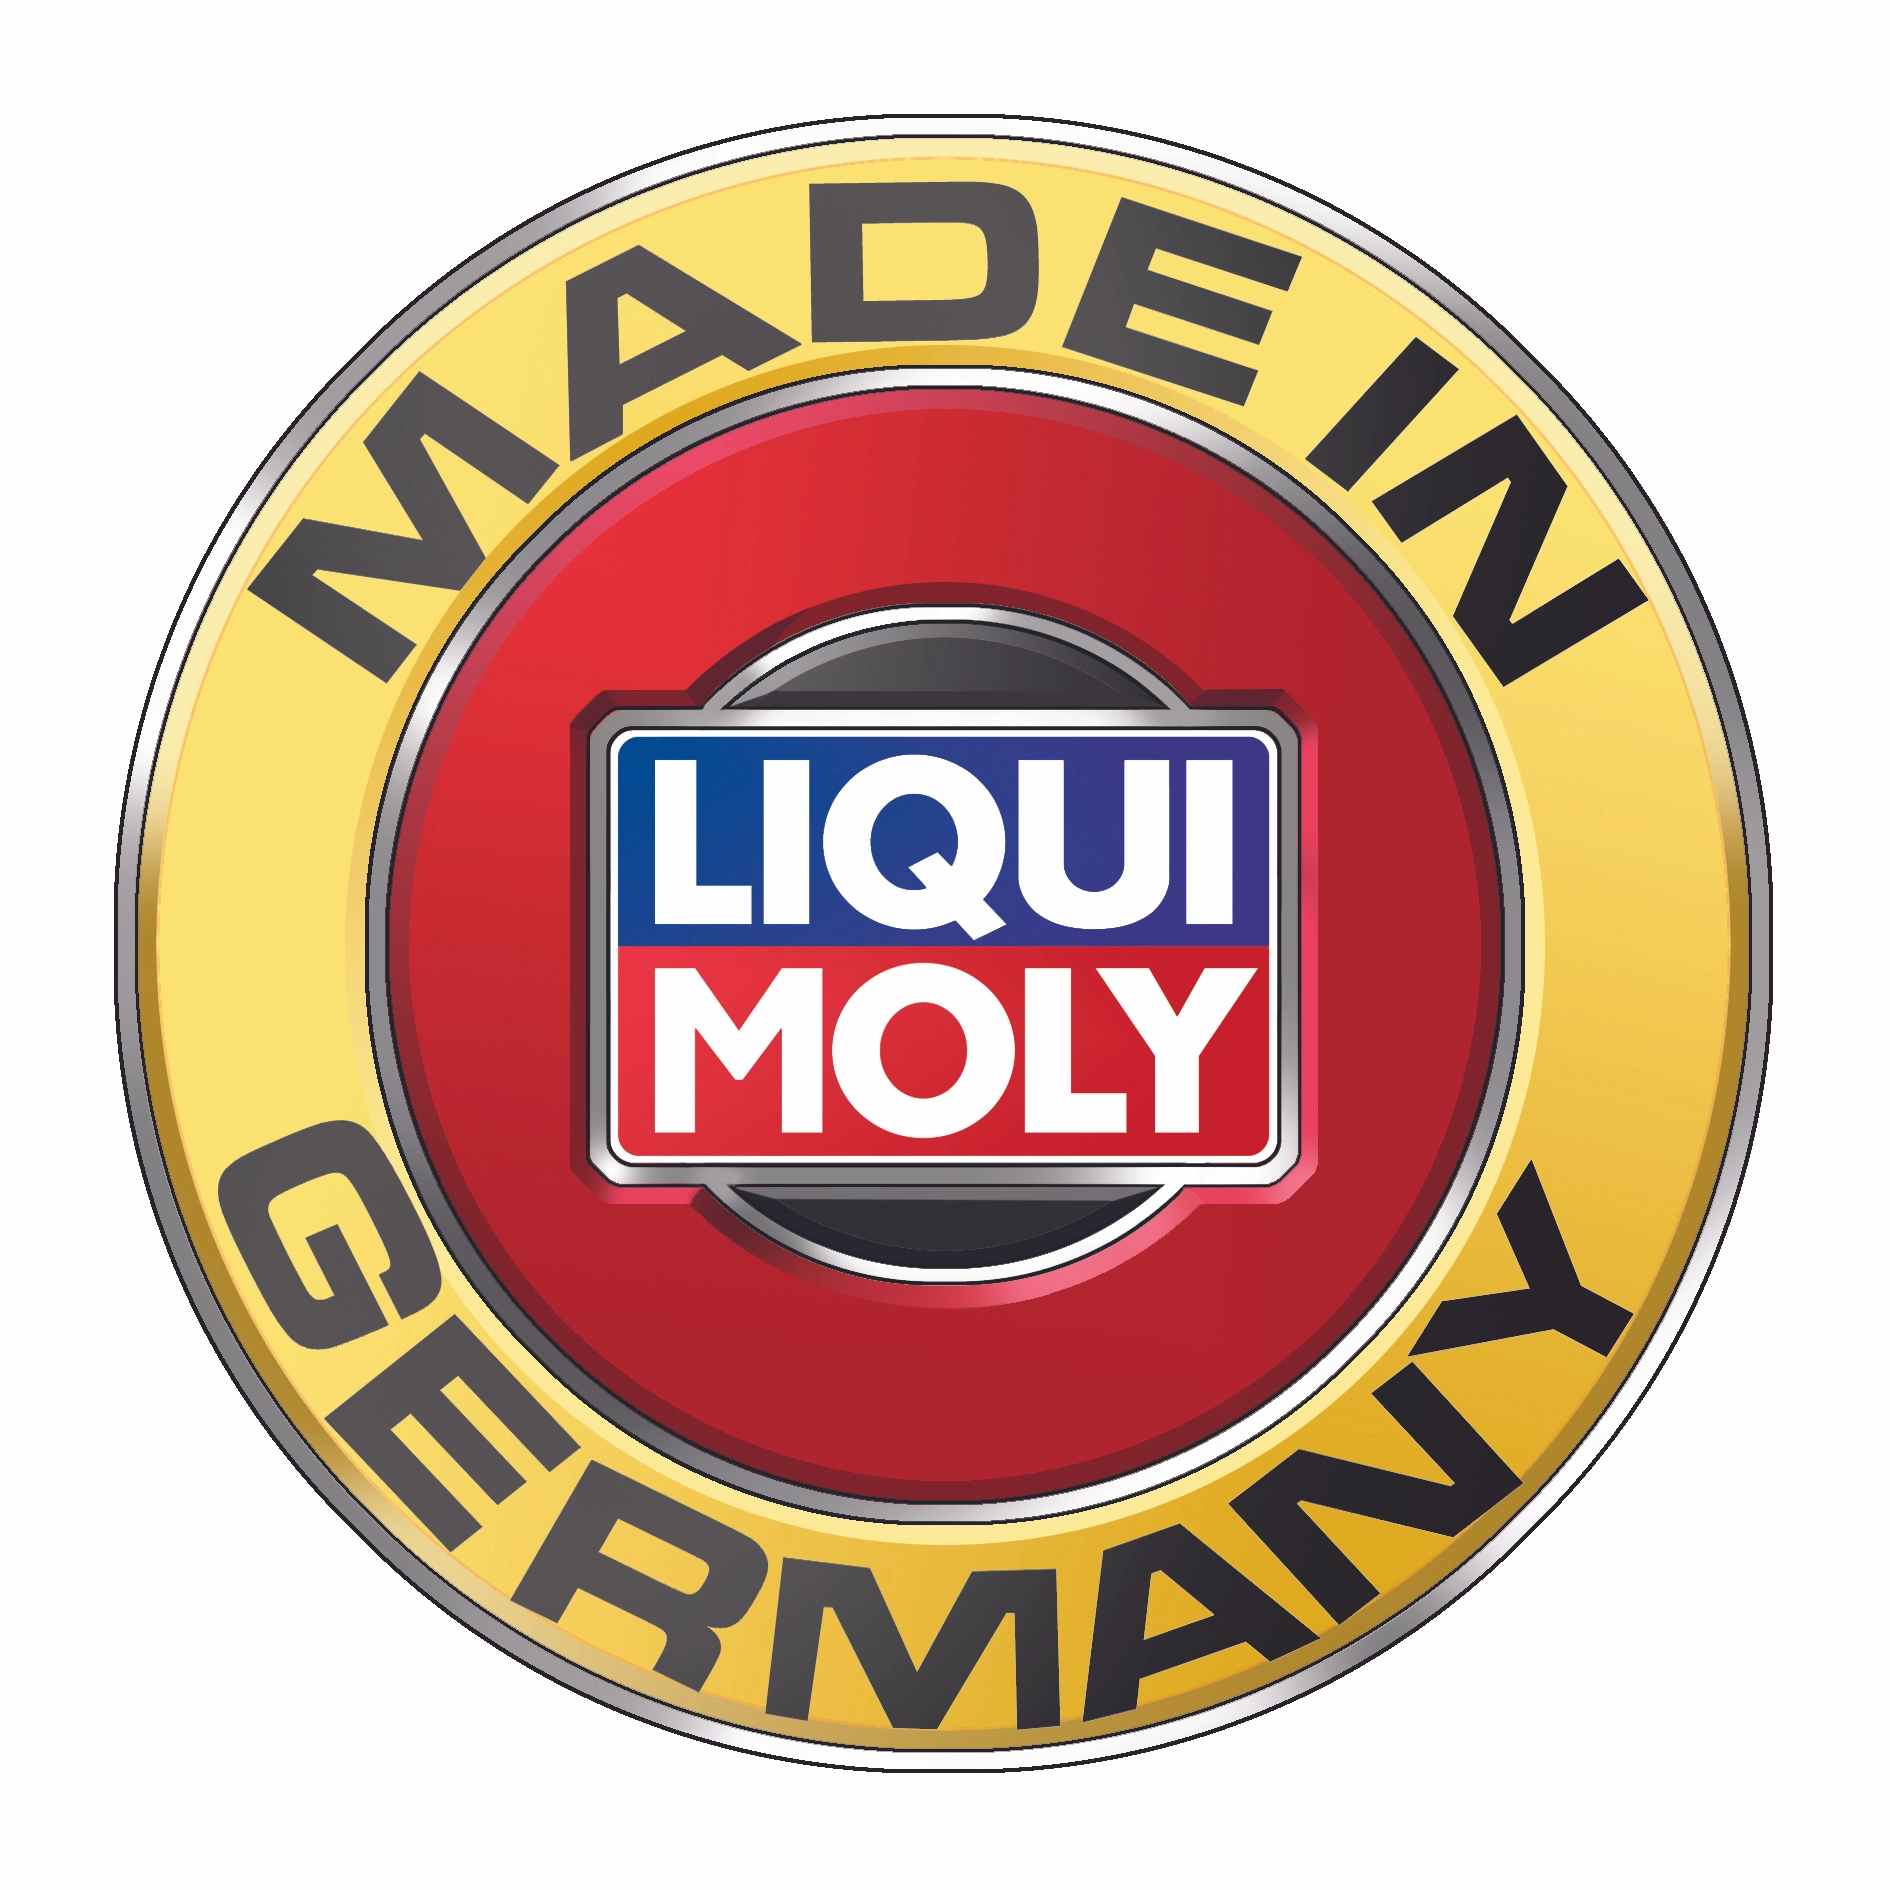 Liqui Moly mtx Vergaser-Reiniger 300 ml kaufen bei OBI